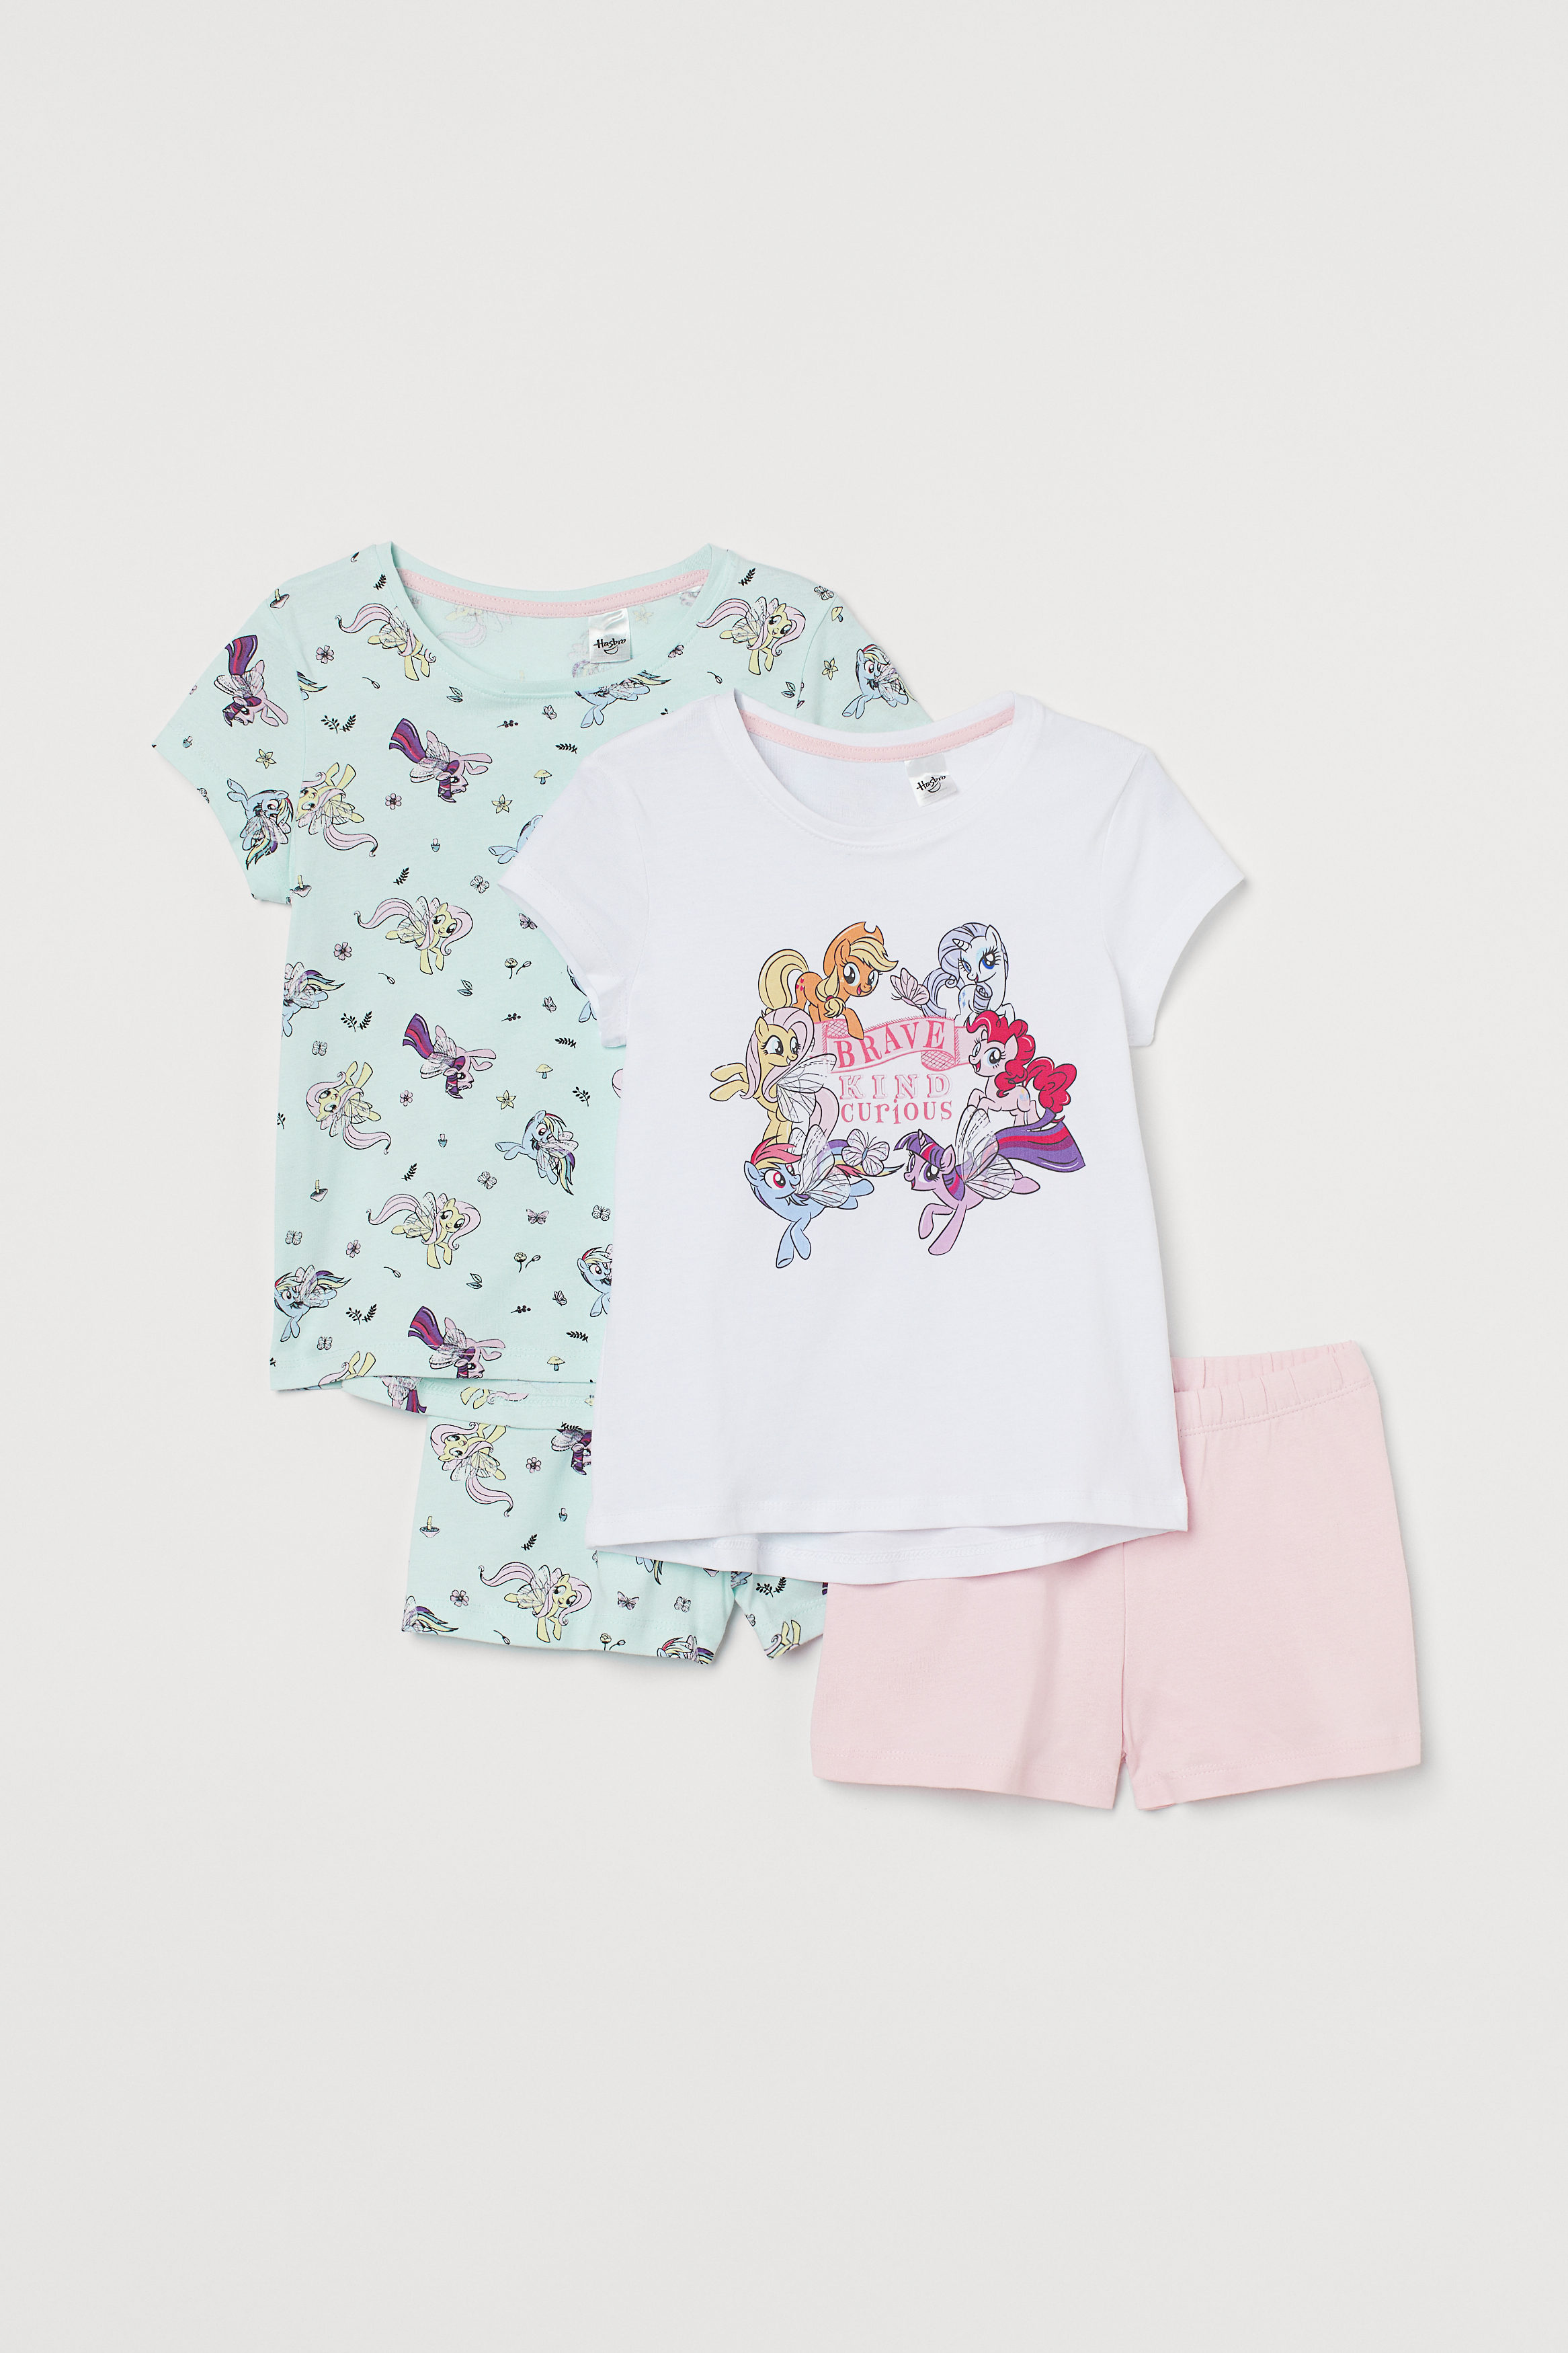 Kinder 2er-Pack Baumwollschlafanzüge mit Print H&M Jungen Kleidung Nachtwäsche Schlafanzüge 